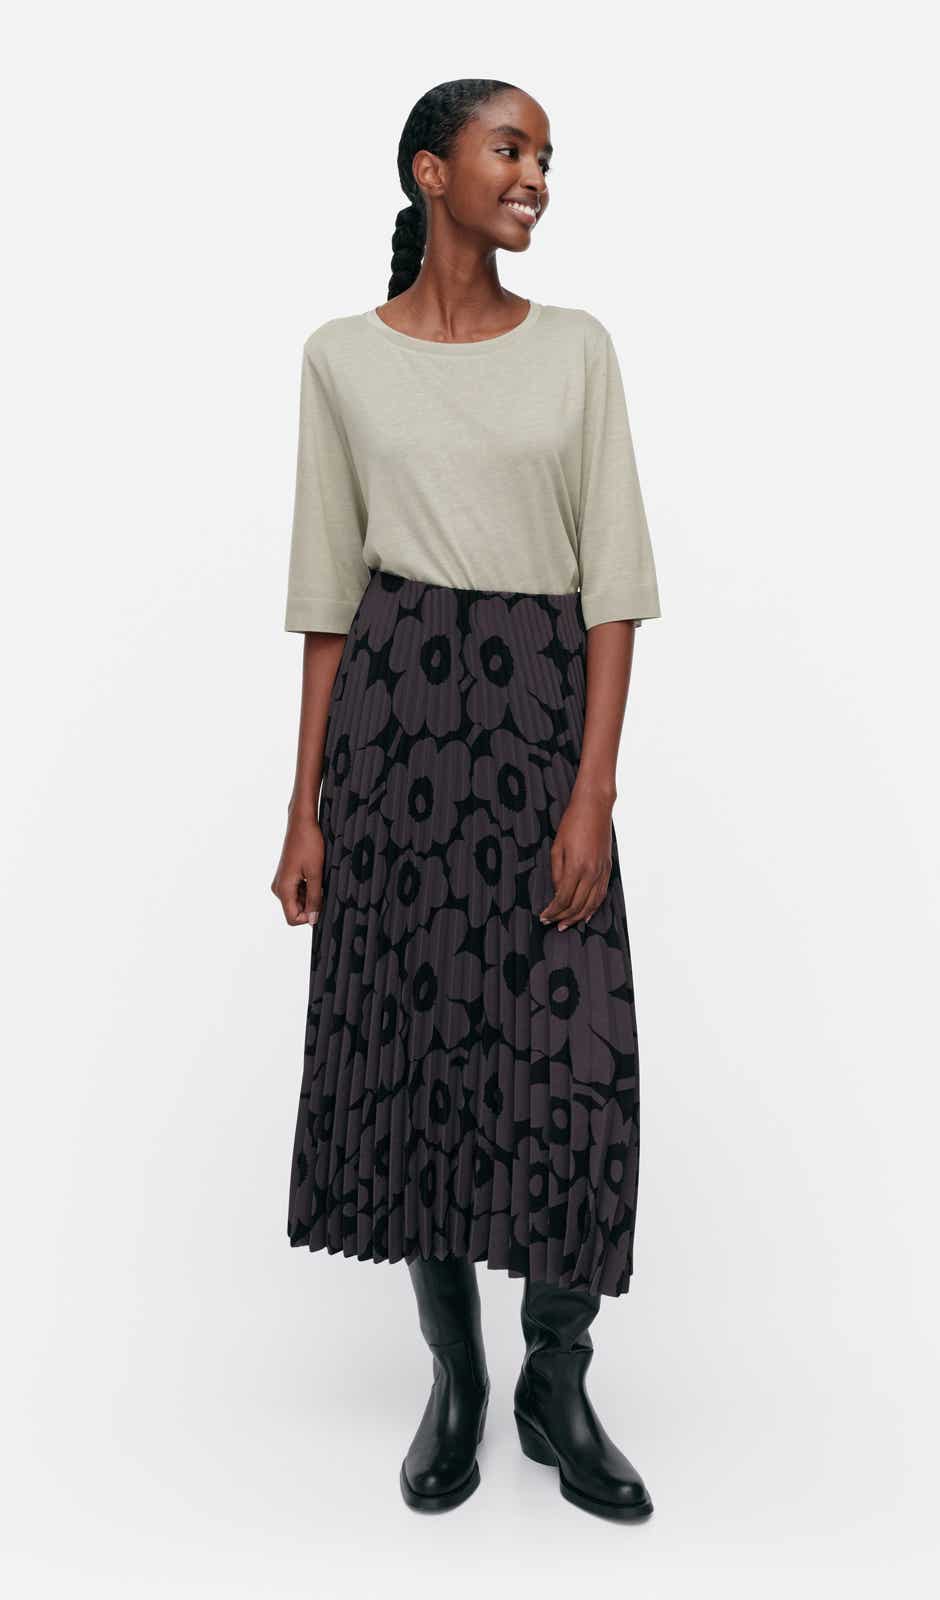 Myy Unikko skirt – dense recycled polyester